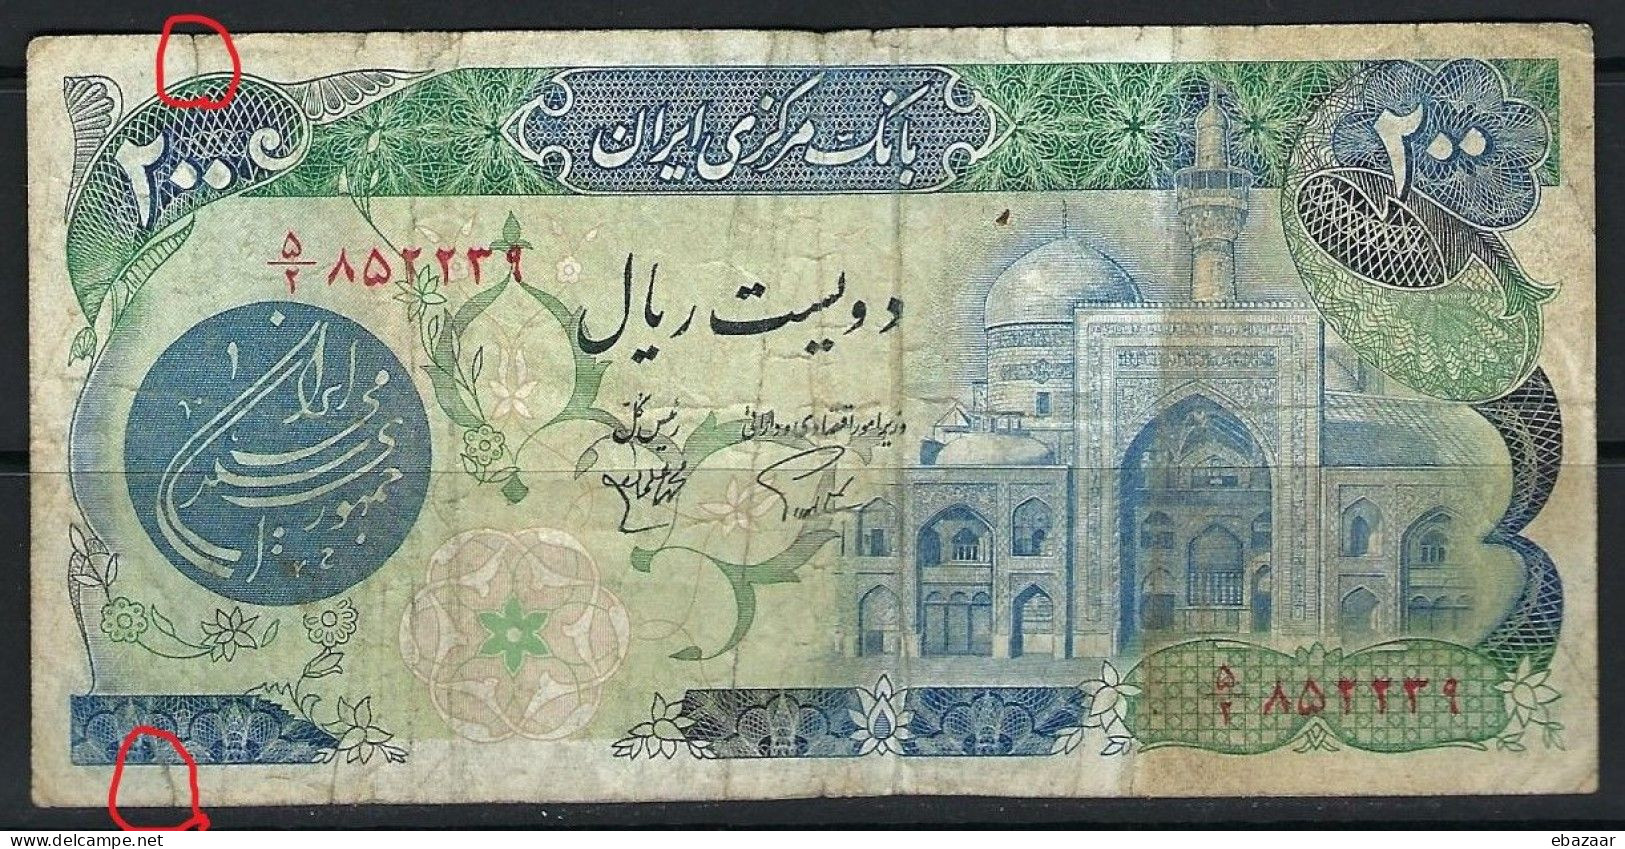 Iran 1981 (Bank Markazi Iran) Banknote 200 Rials P-127a Circulated With Small Tears At Top & Bottom - Iran